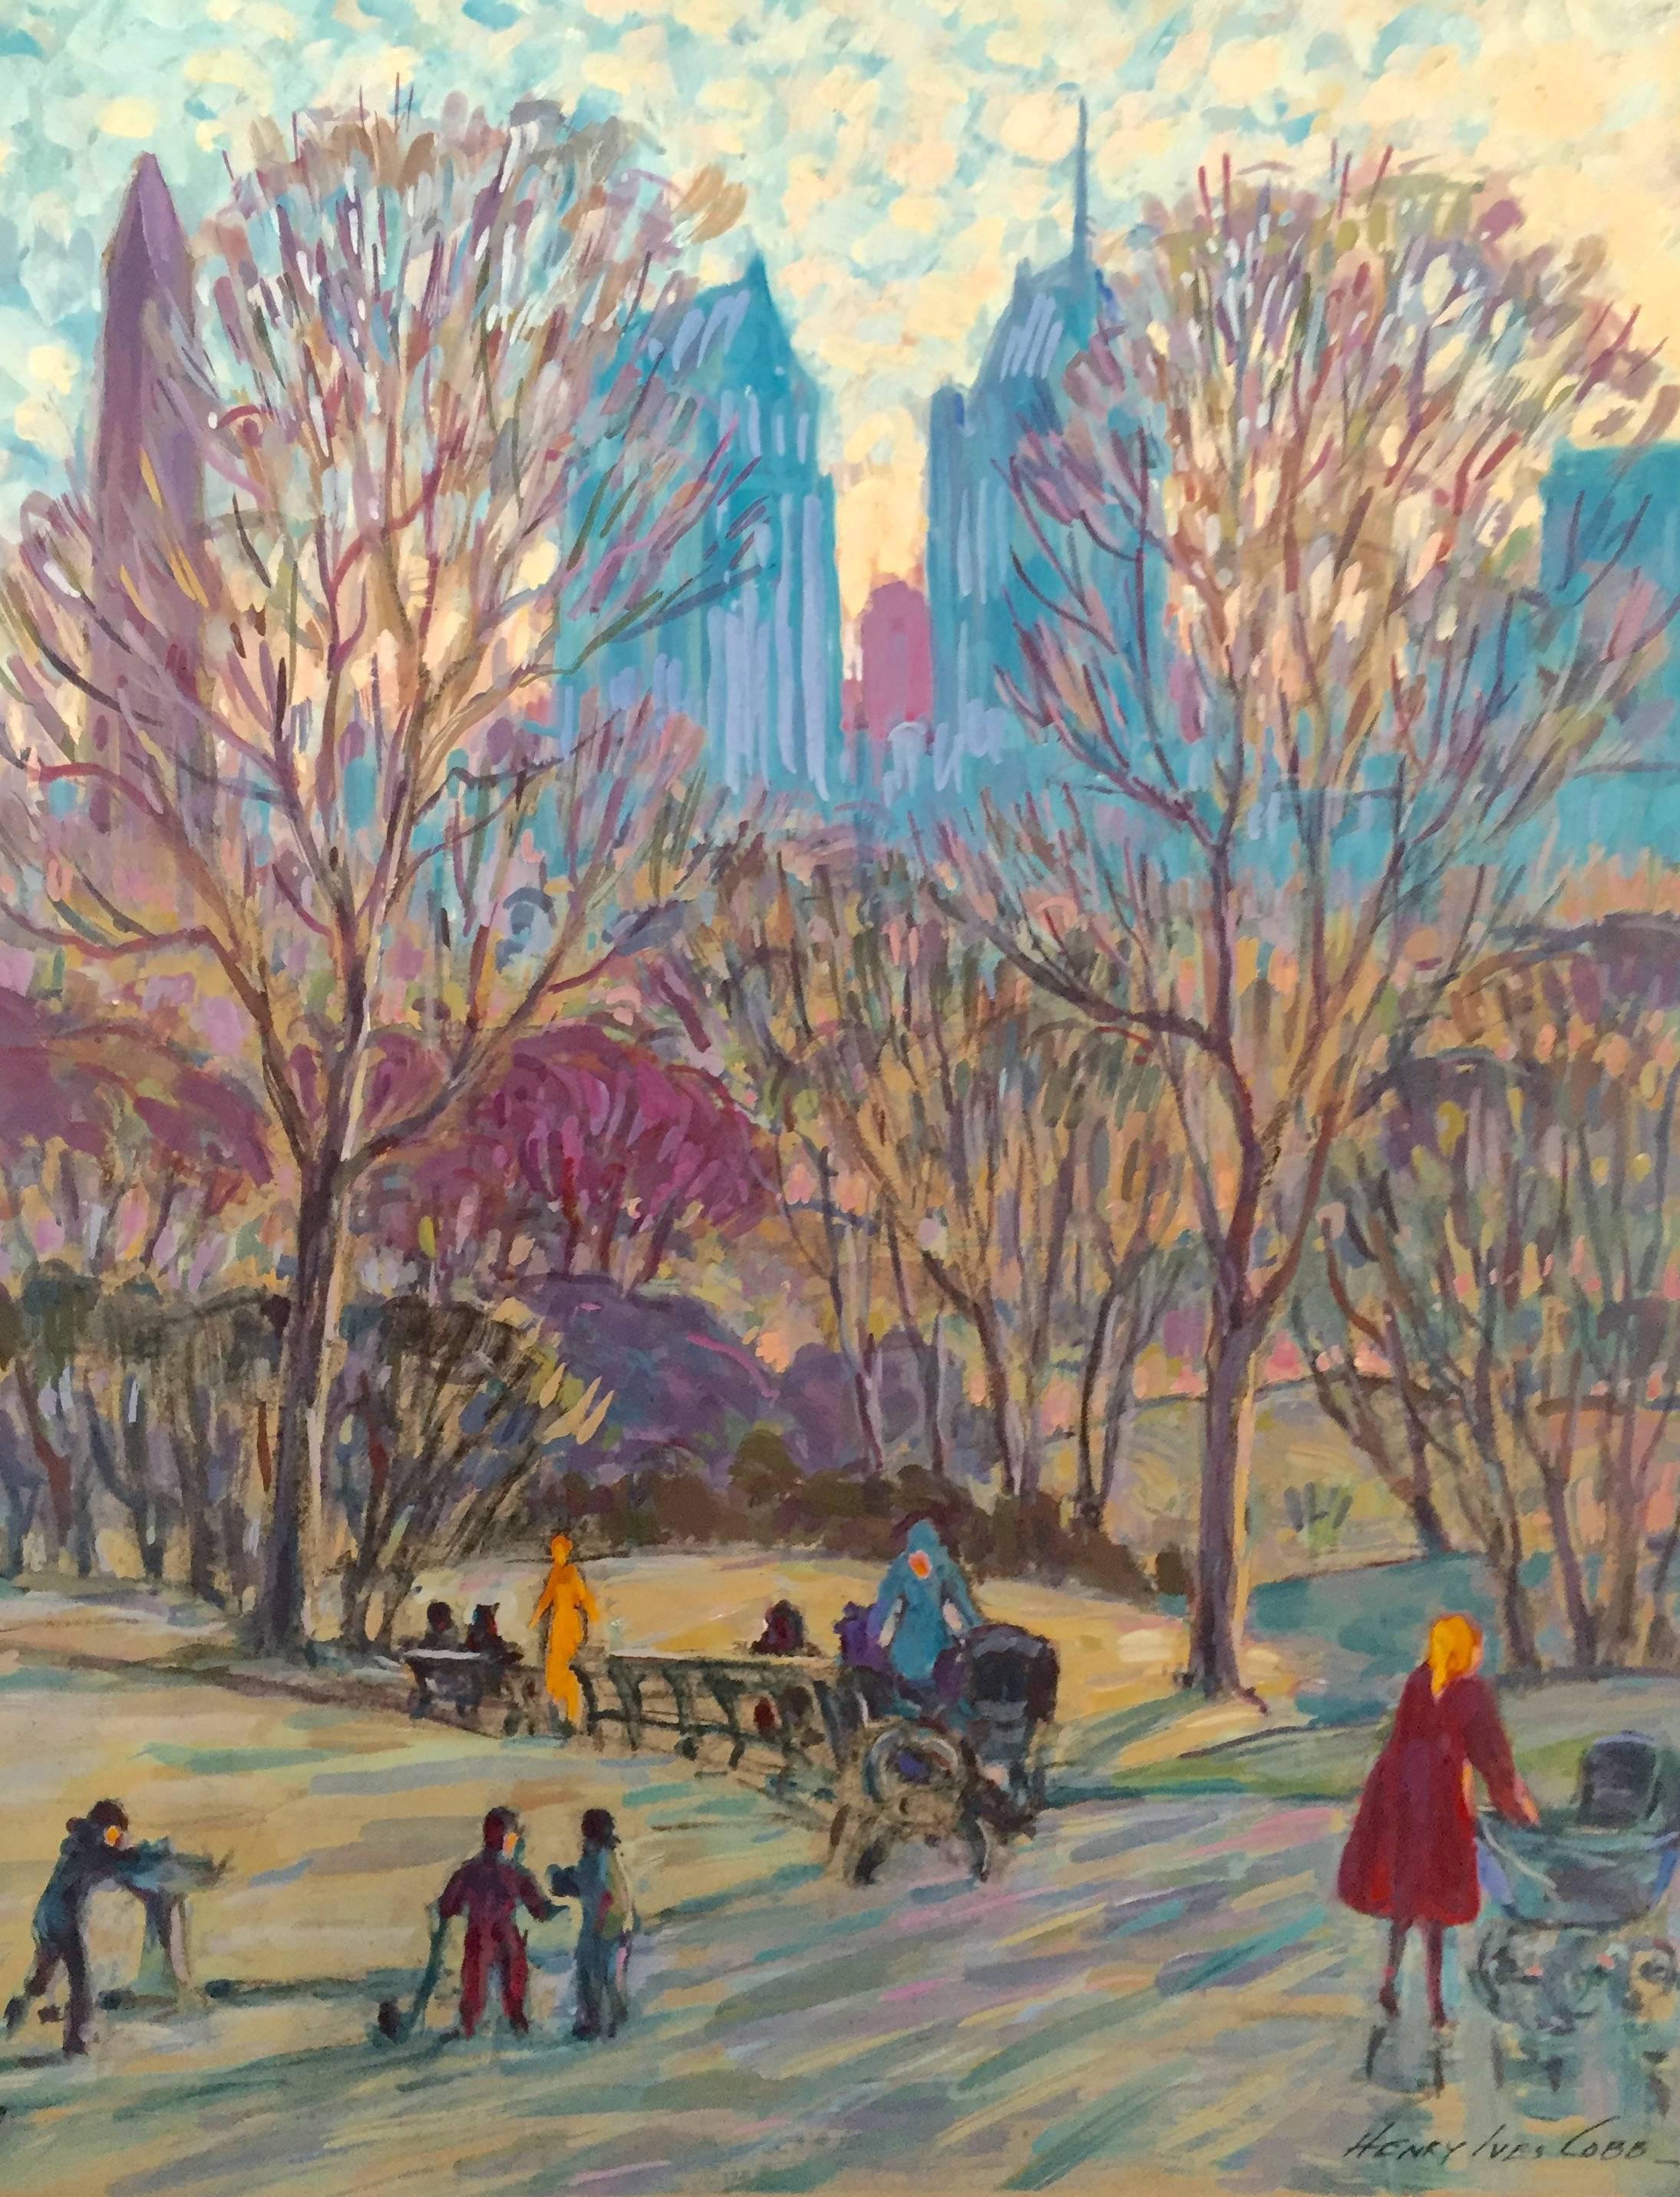 Henry Ives Cobb, Jr. Landscape Art - "Strolling in Central Park"